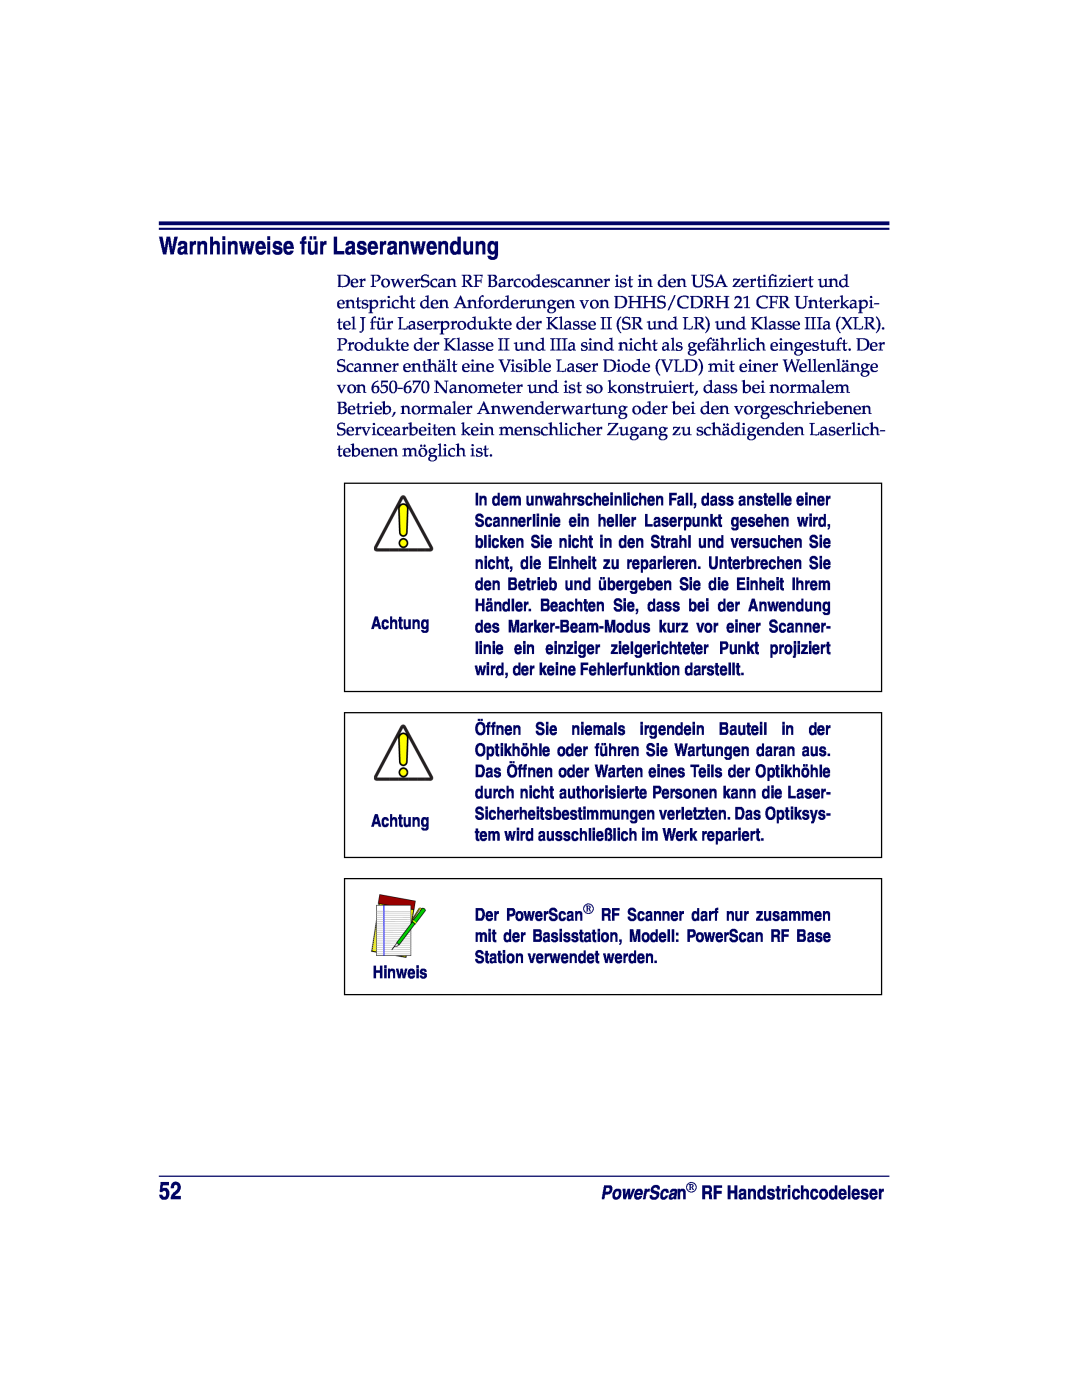 Datalogic Scanning SR, XLR, HD manual Warnhinweise für Laseranwendung, wird, der keine Fehlerfunktion darstellt, Achtung 